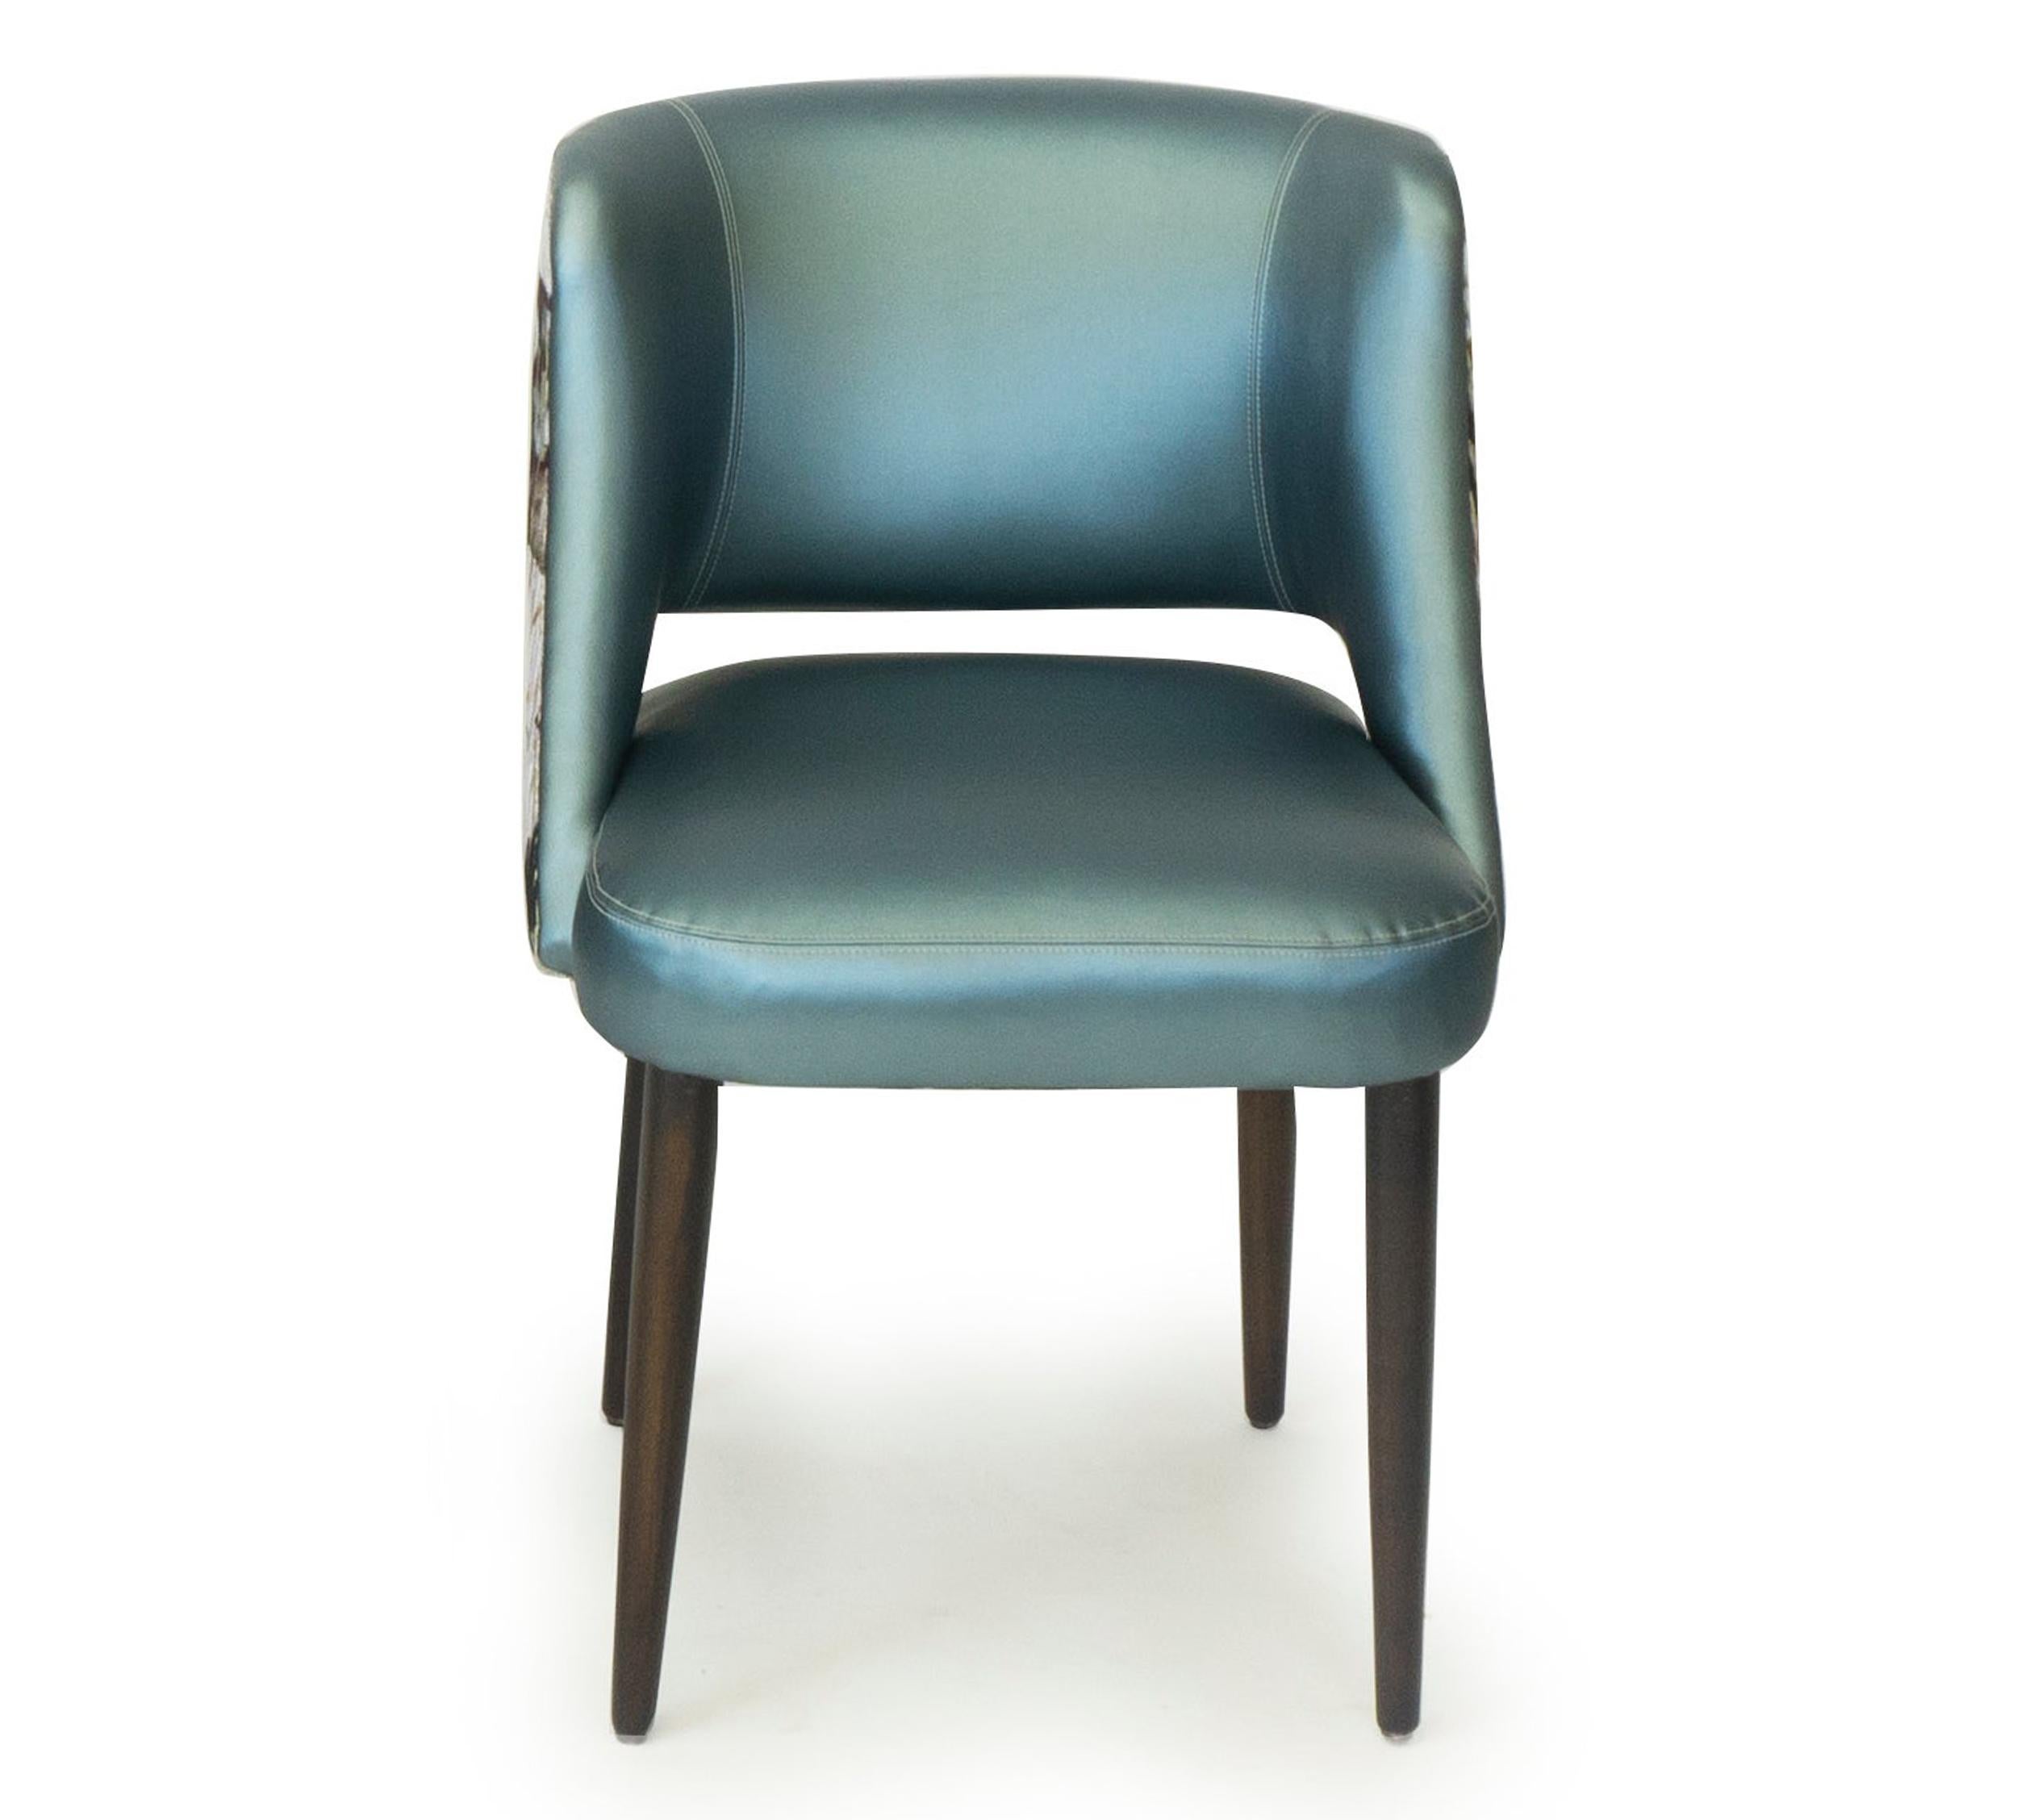 Moderner Esszimmerstuhl mit entspannt geschwungener Rückenlehne. Abgebildet in einer Kombination aus blauem Vinyl und einem floralen Jacquard-Samt von Romo Fabrics. Beine aus Walnussholz. Dieser Stuhl ist vollständig anpassbar und kann wie